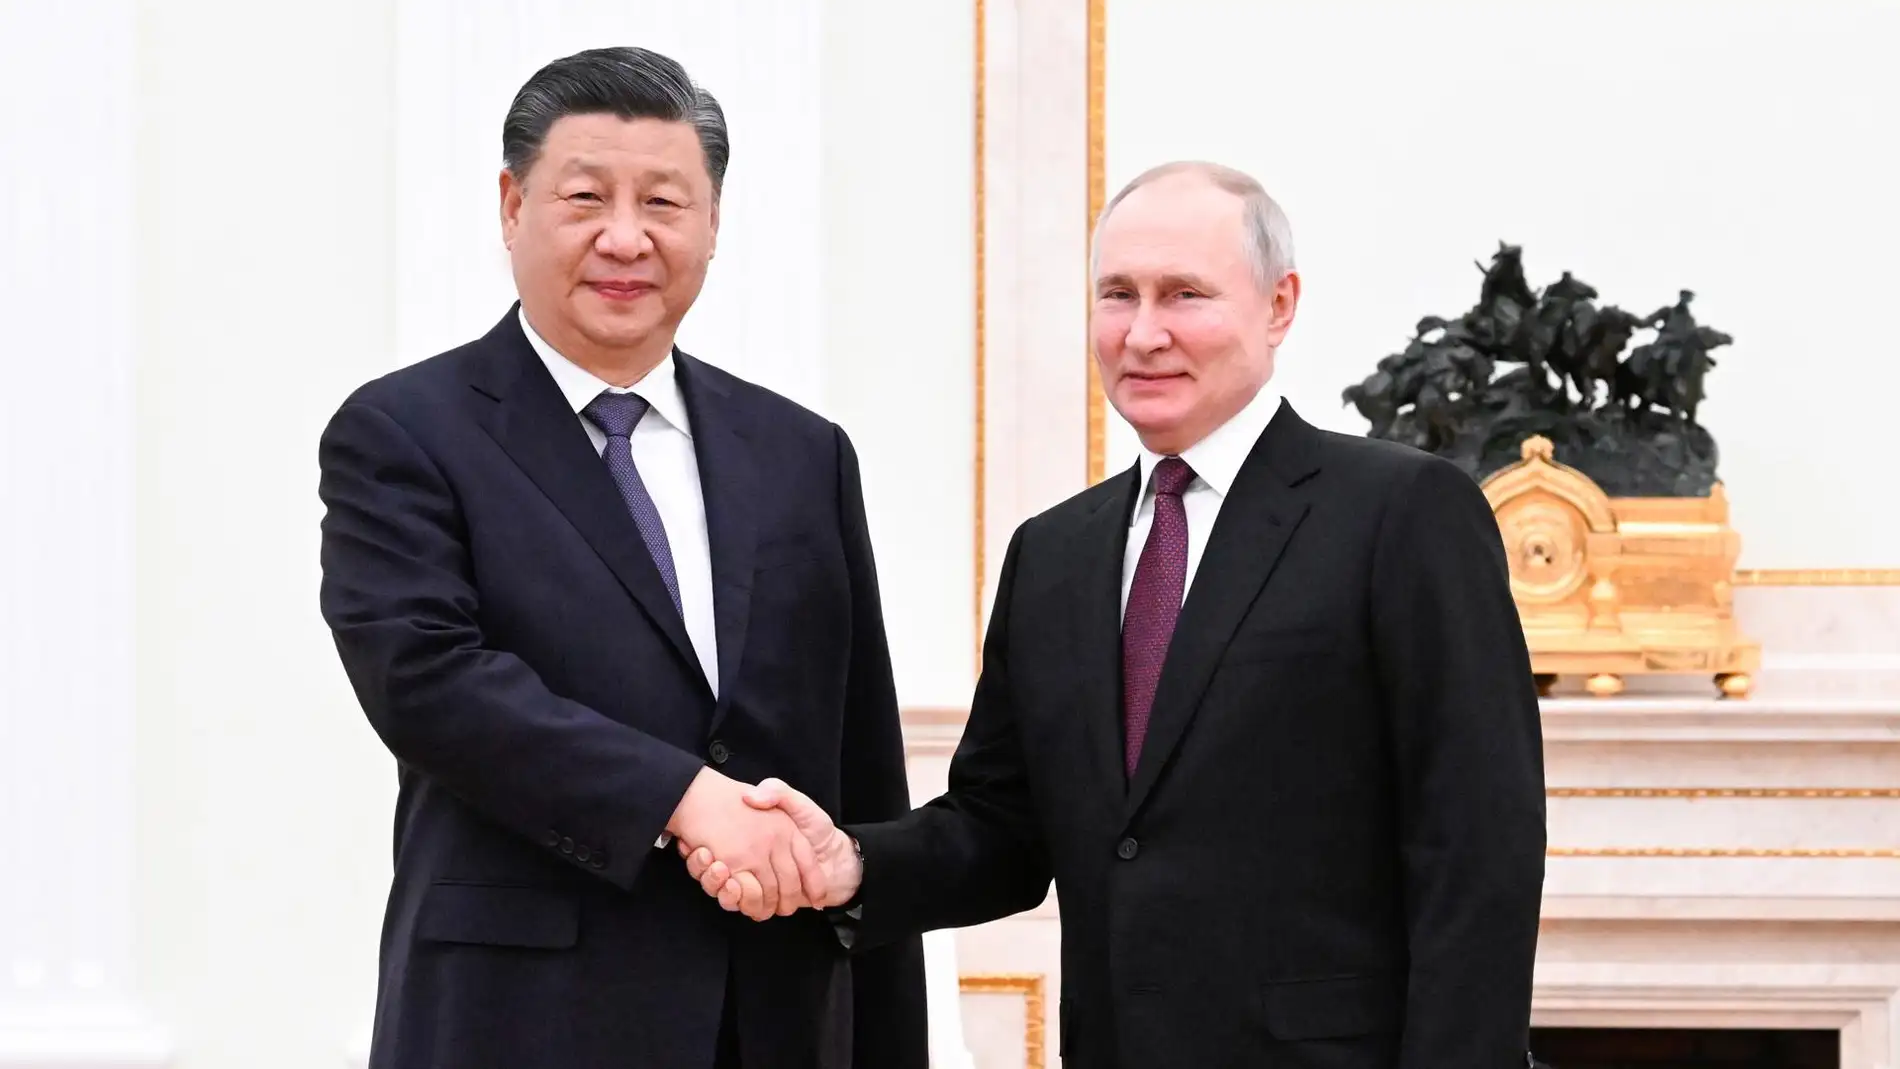 El presidente chino, Xi Jinping, es recibido por el presidente ruso, Vladimir Putin, en el Kremlin de Moscú